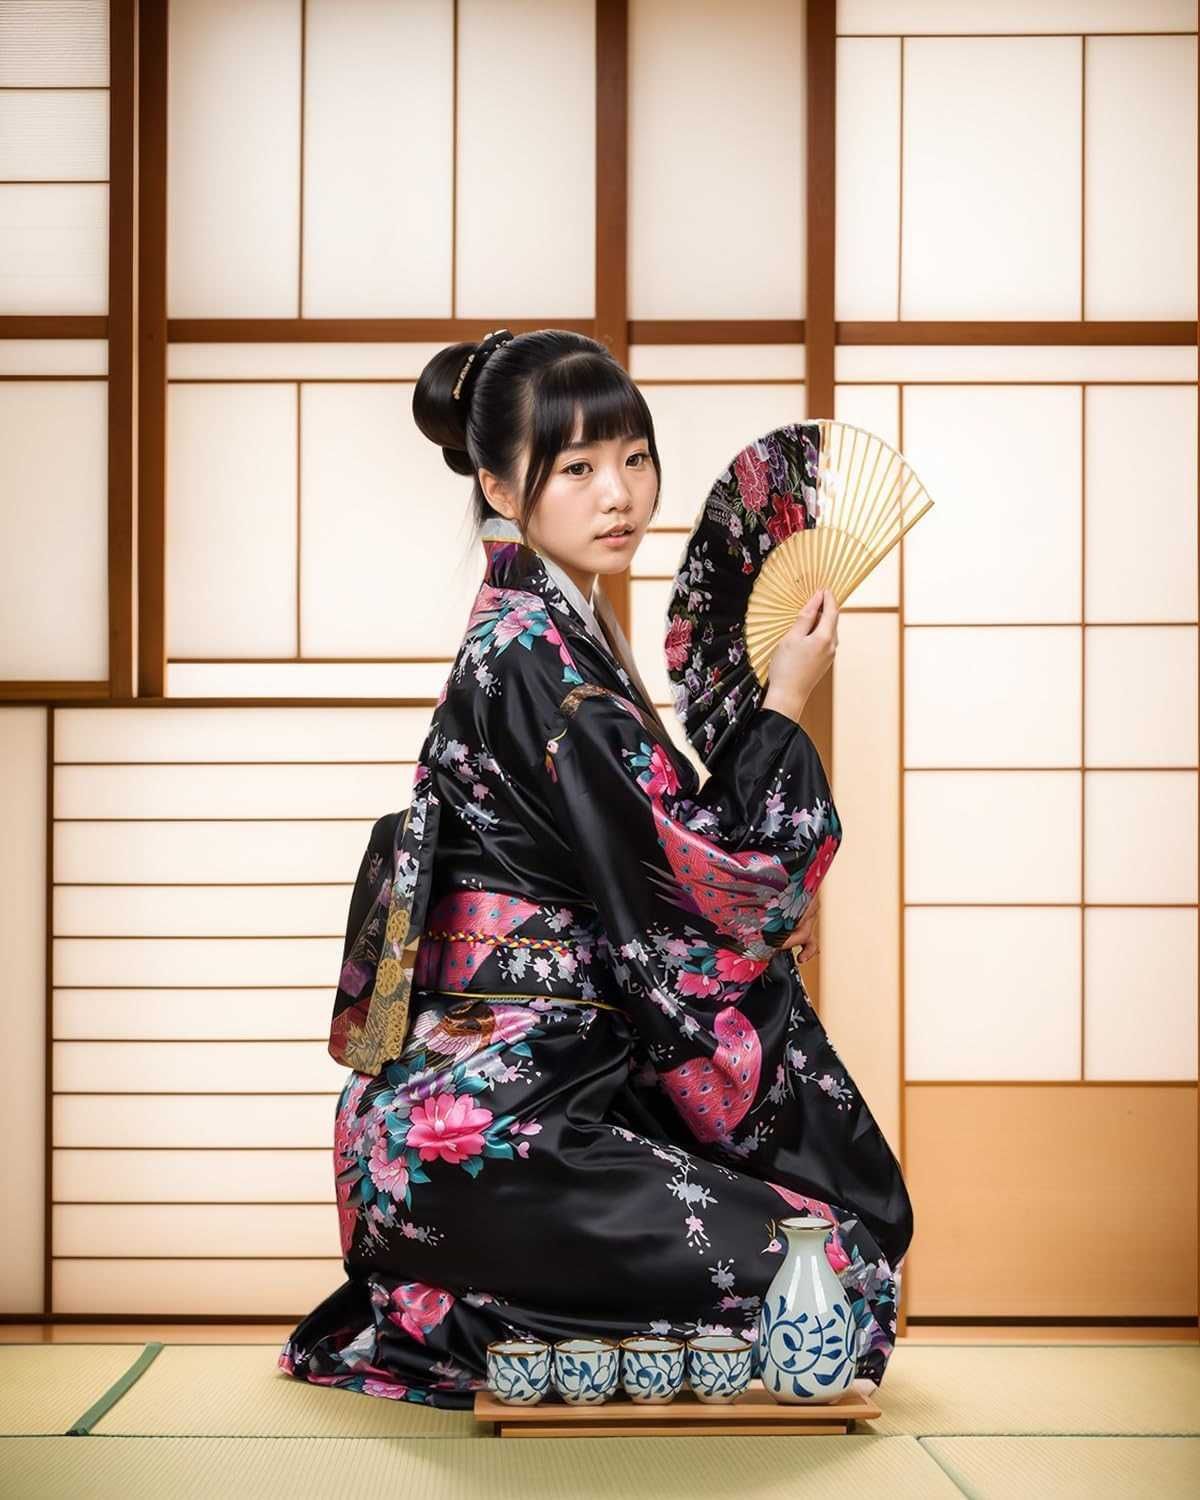 Nowy kostium japoński / szlafrok/ gejsza / strój / kimono /XL !2197!